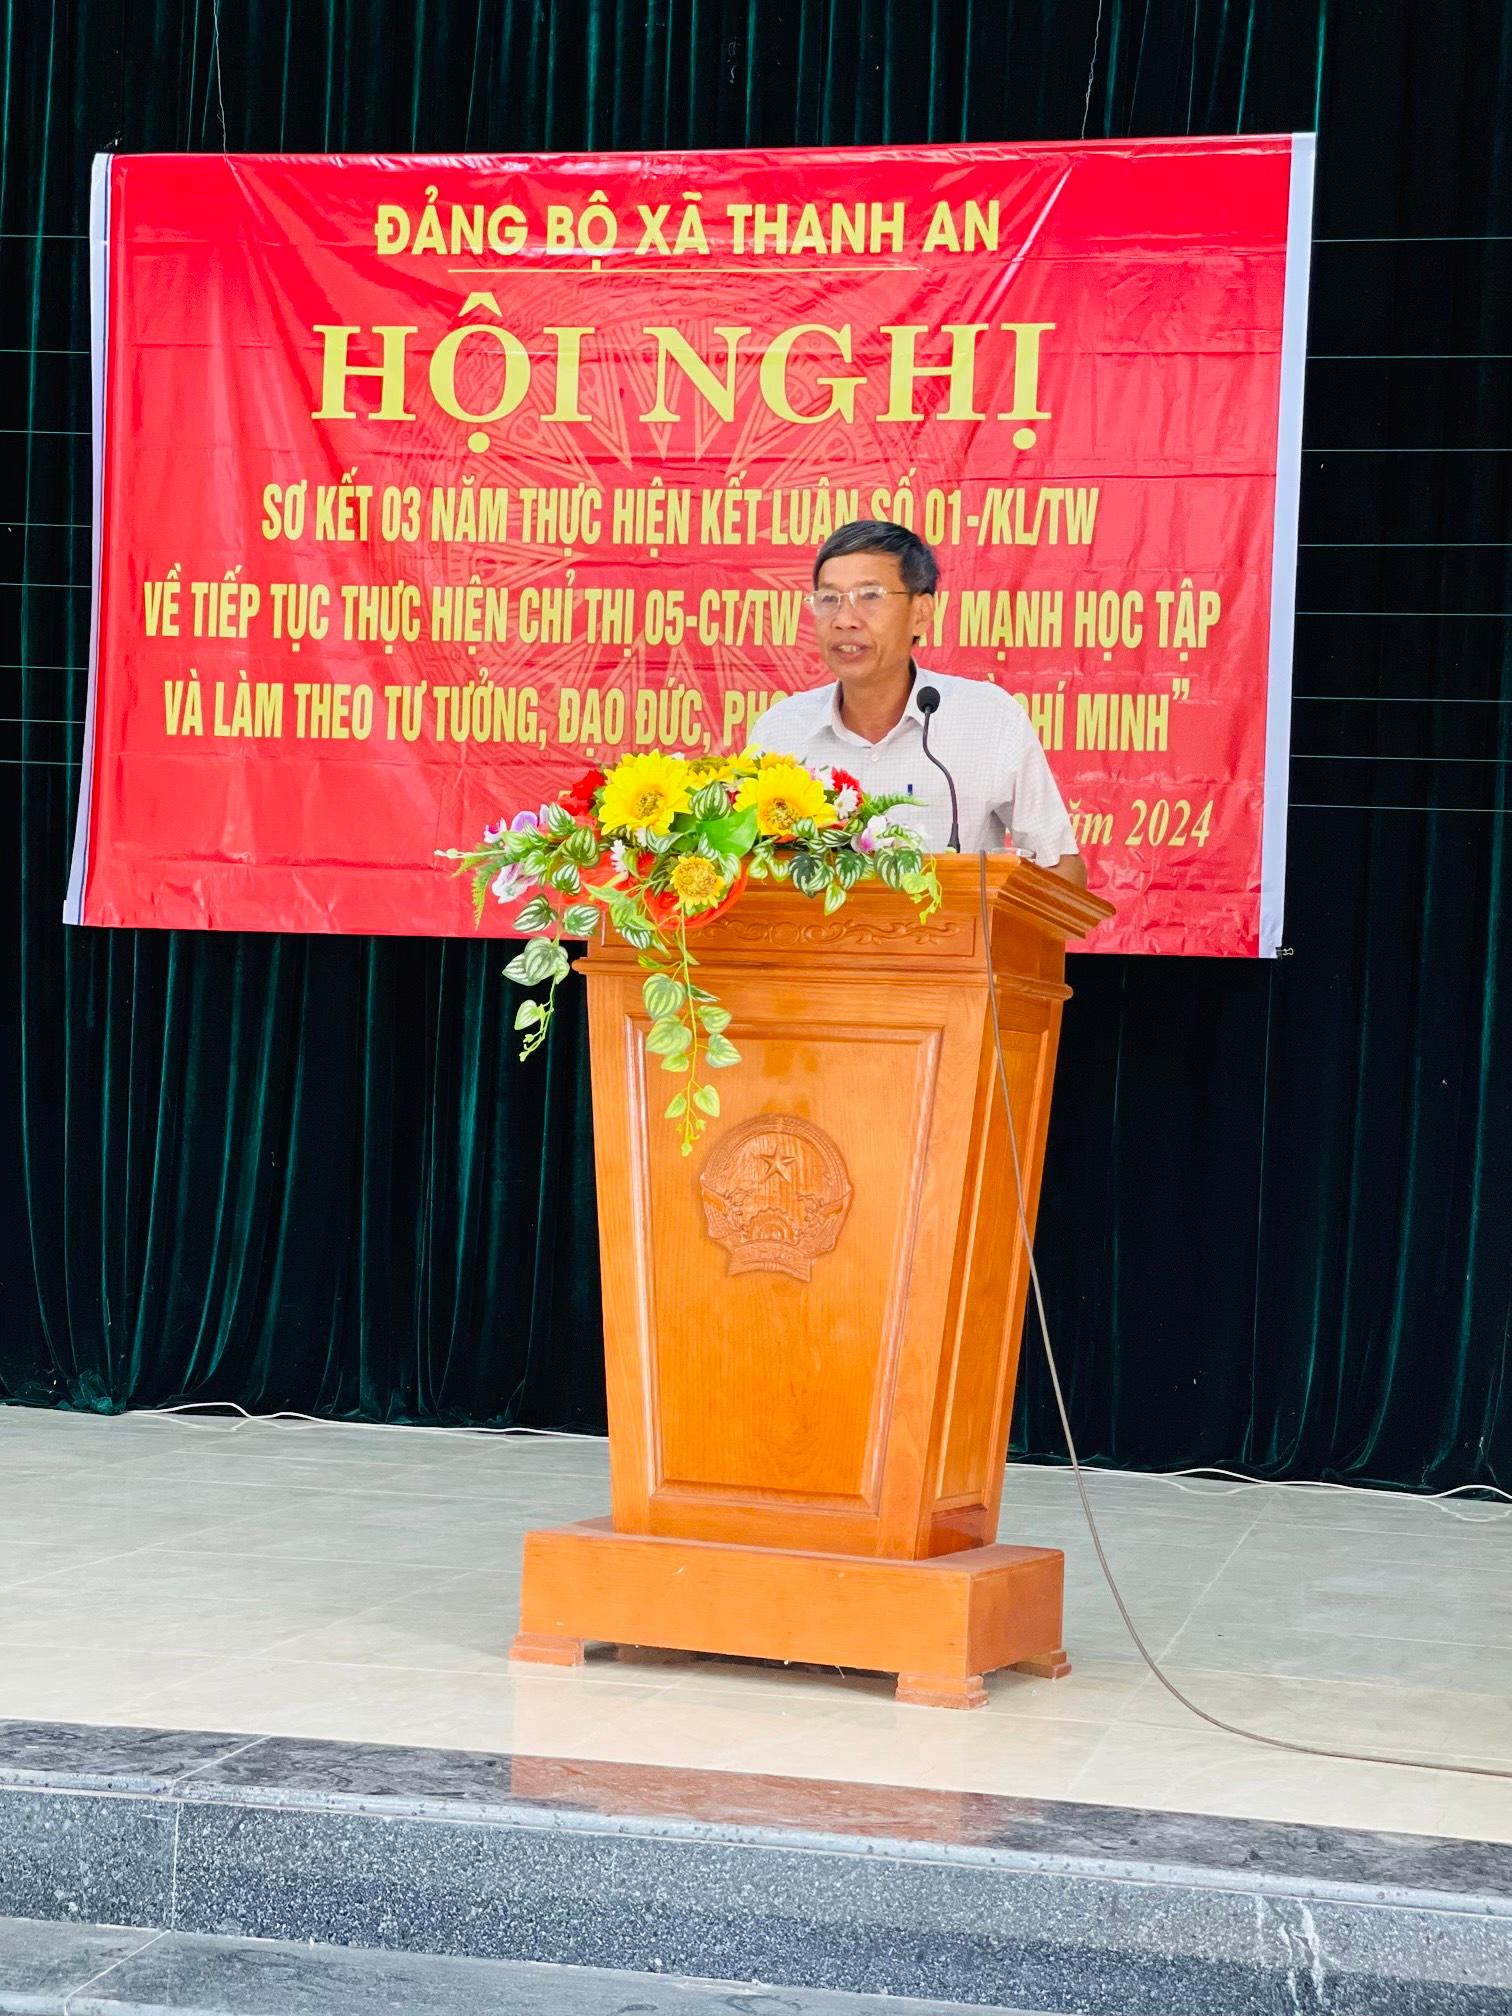 Hội nghị sơ kết 3 năm thực hiện Kết luận số 01-KL/TW về “Đẩy mạnh học tập và làm theo tư tưởng, đạo đức, phong cách Hồ Chí Minh”